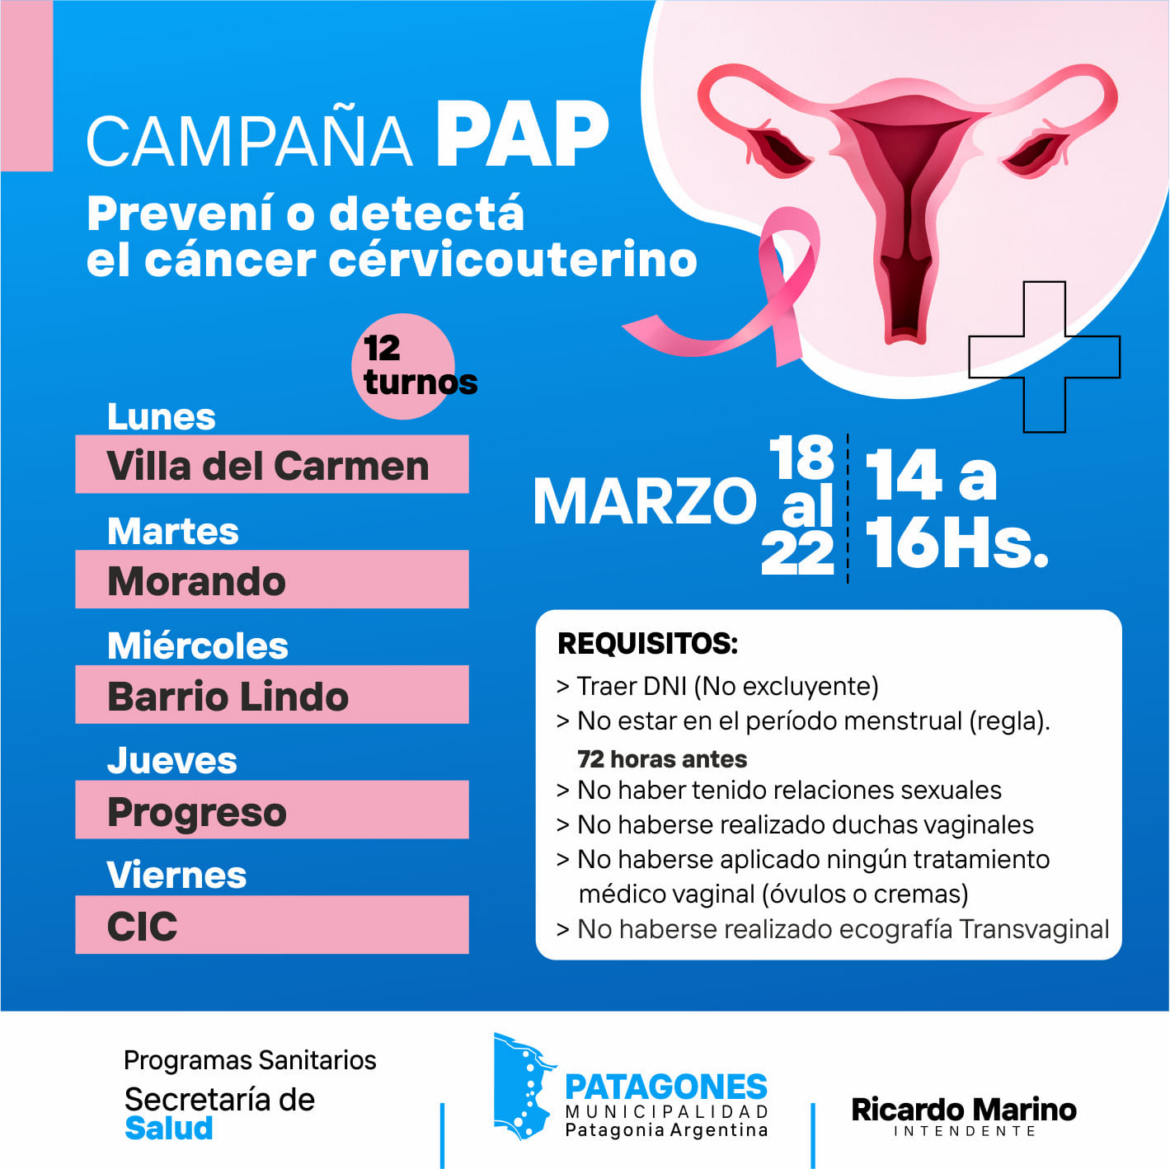 María Elena | sobre poca difusión de campaña de PAP en Patagones